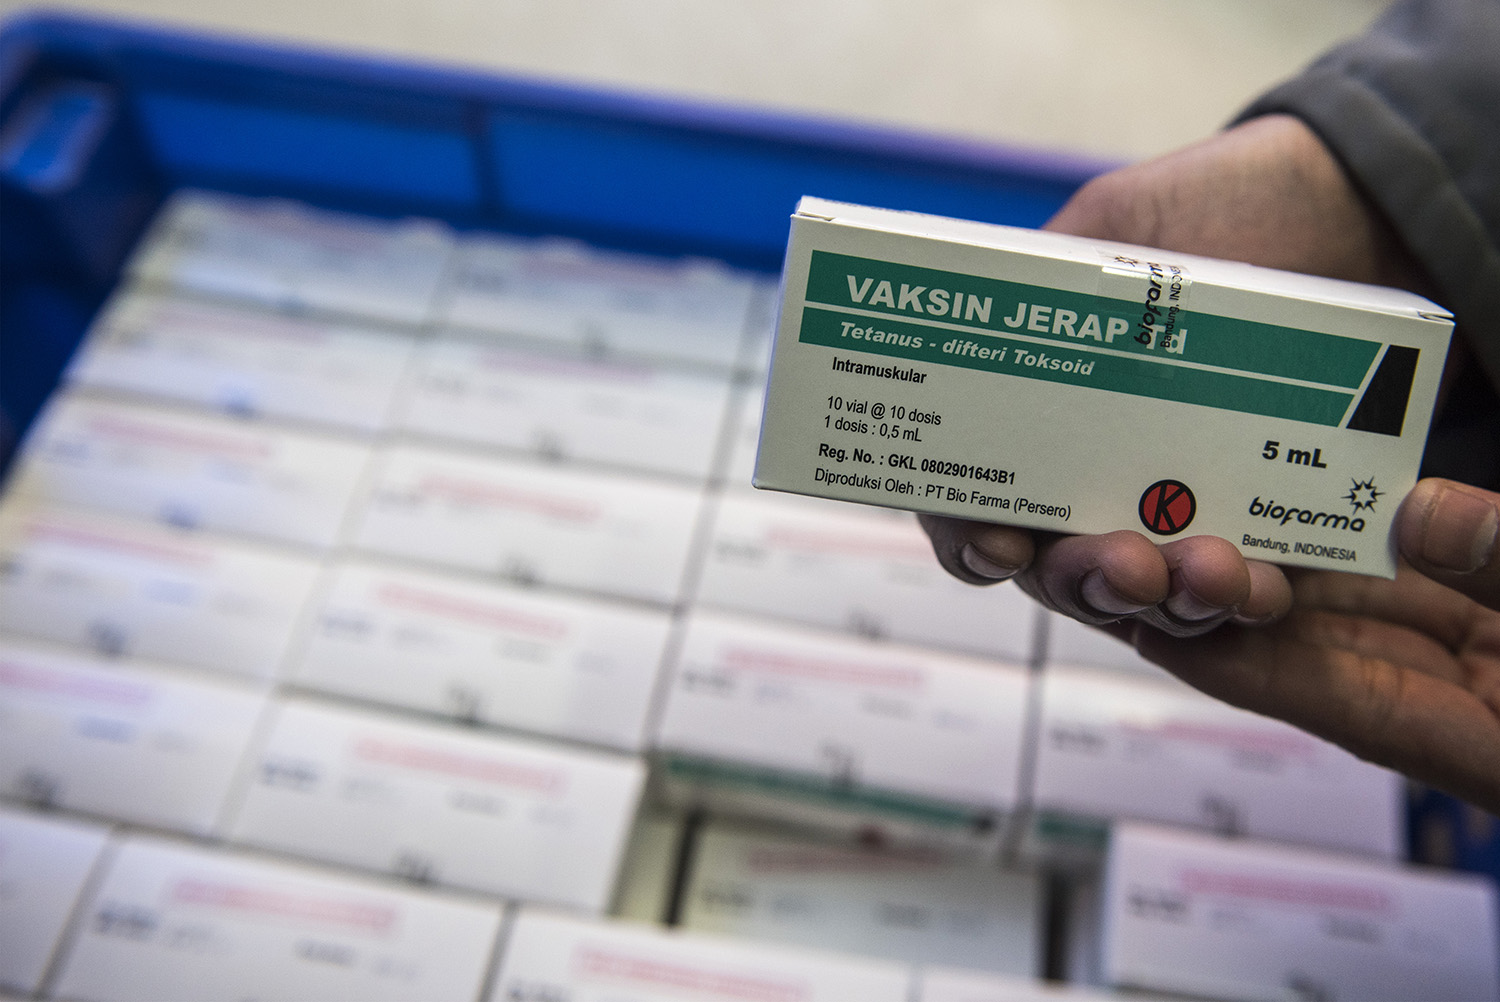 38.140 Penerima Vaksin Pertama di Sumsel Bakal Dikonfirmasi via SMS 